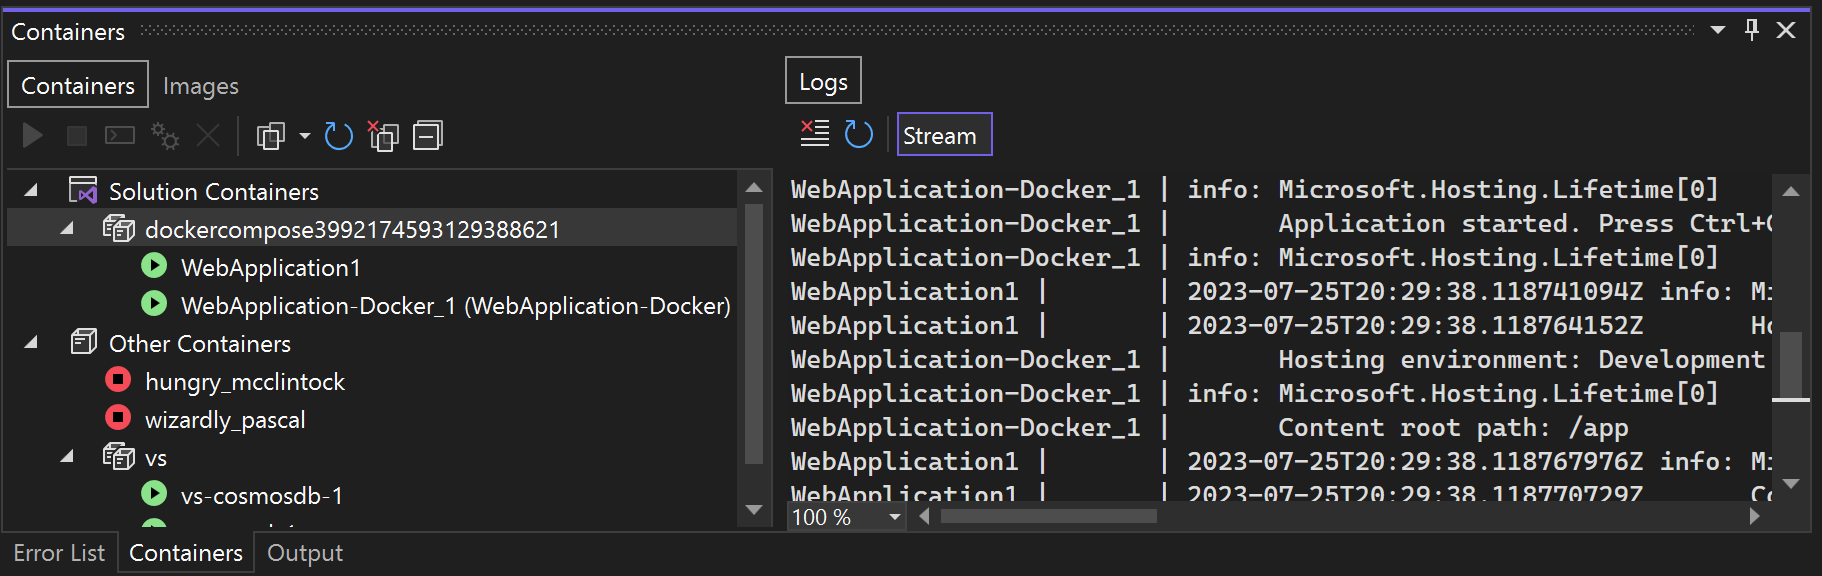 [コンテナー] ウィンドウの Docker Compose ノードを示すスクリーンショット。